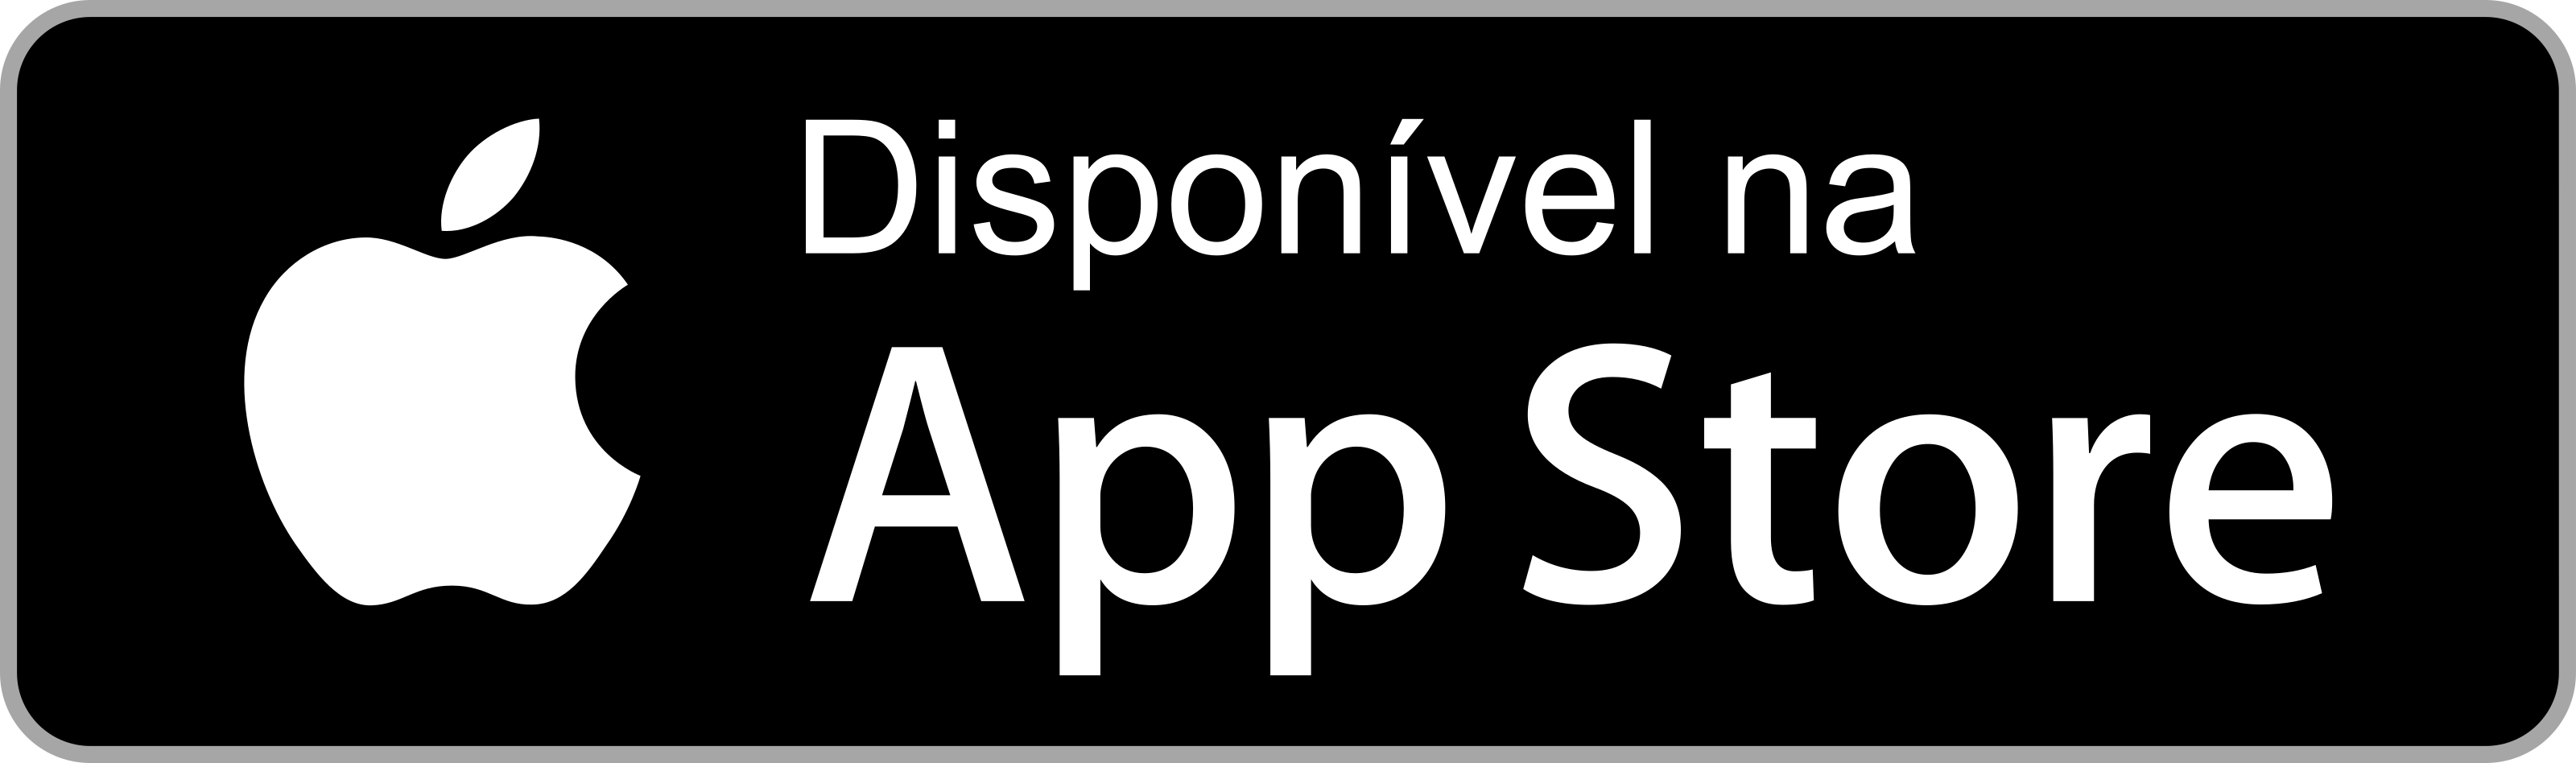 Baixe o Apepe pelo App Store